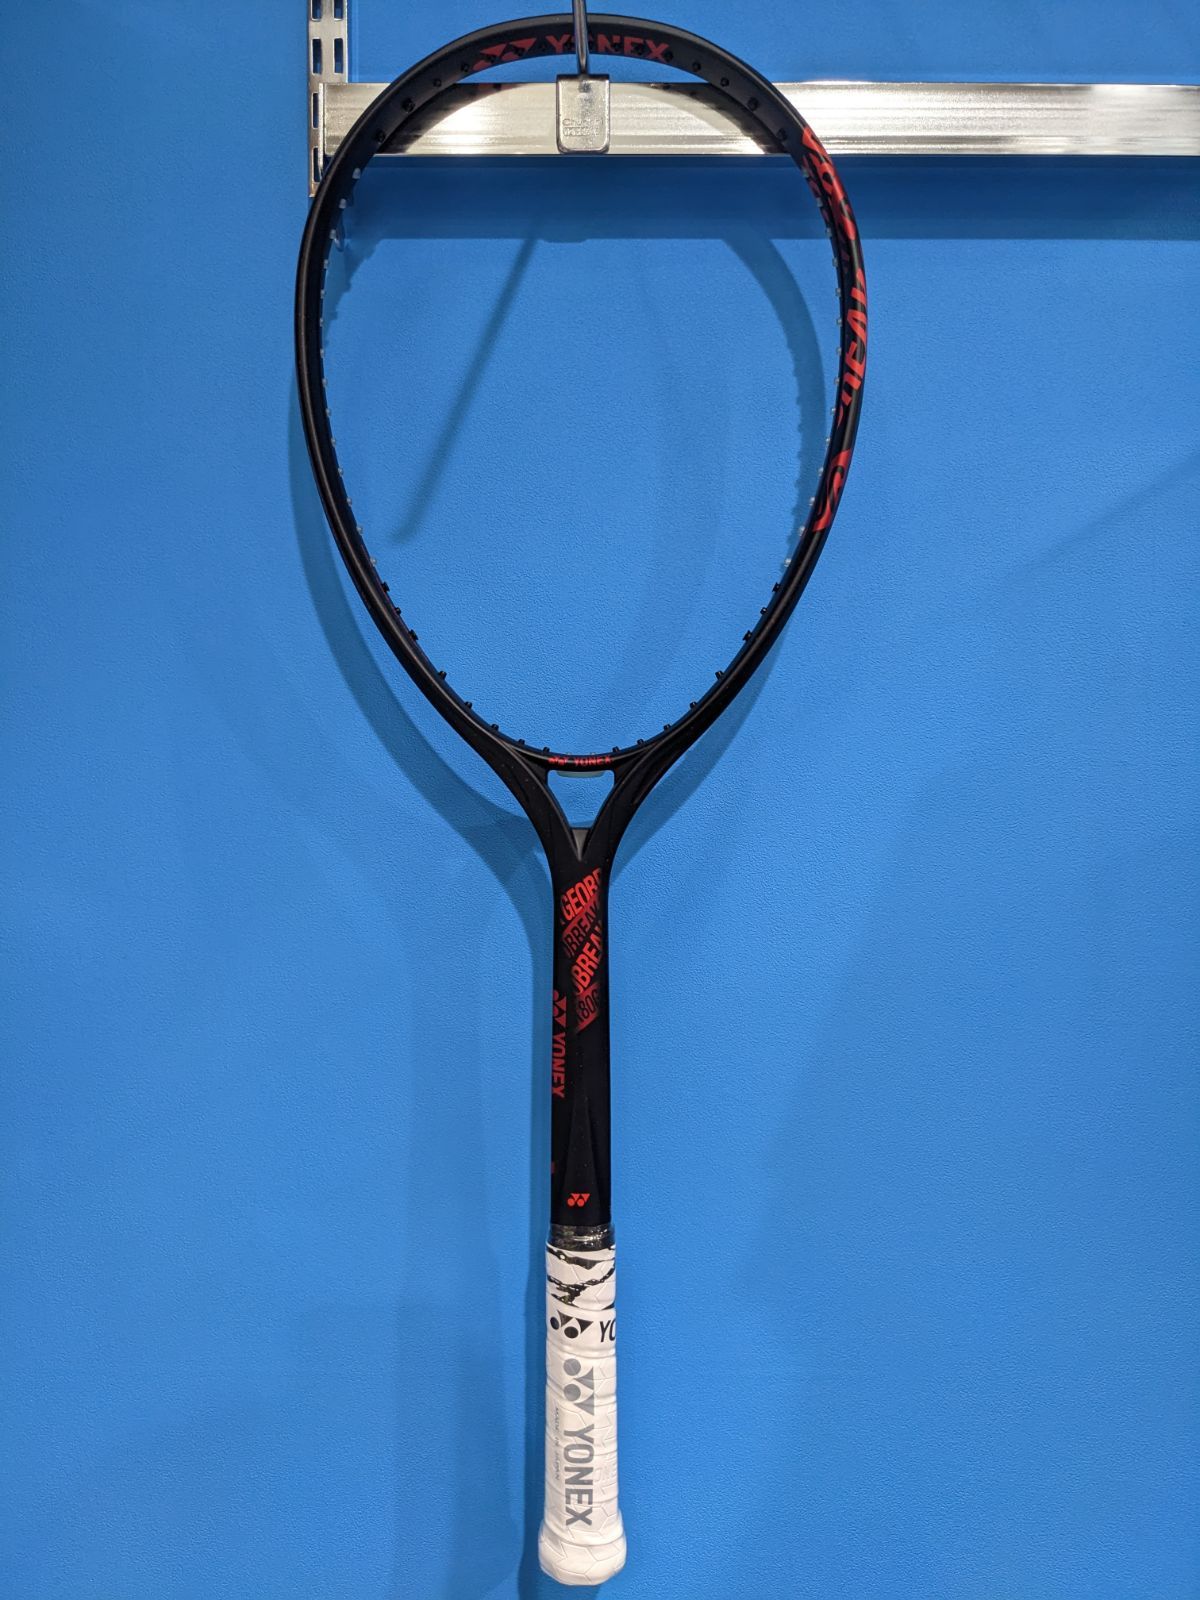 ヨネックス ソフトテニス ラケット ジオブレイク80G